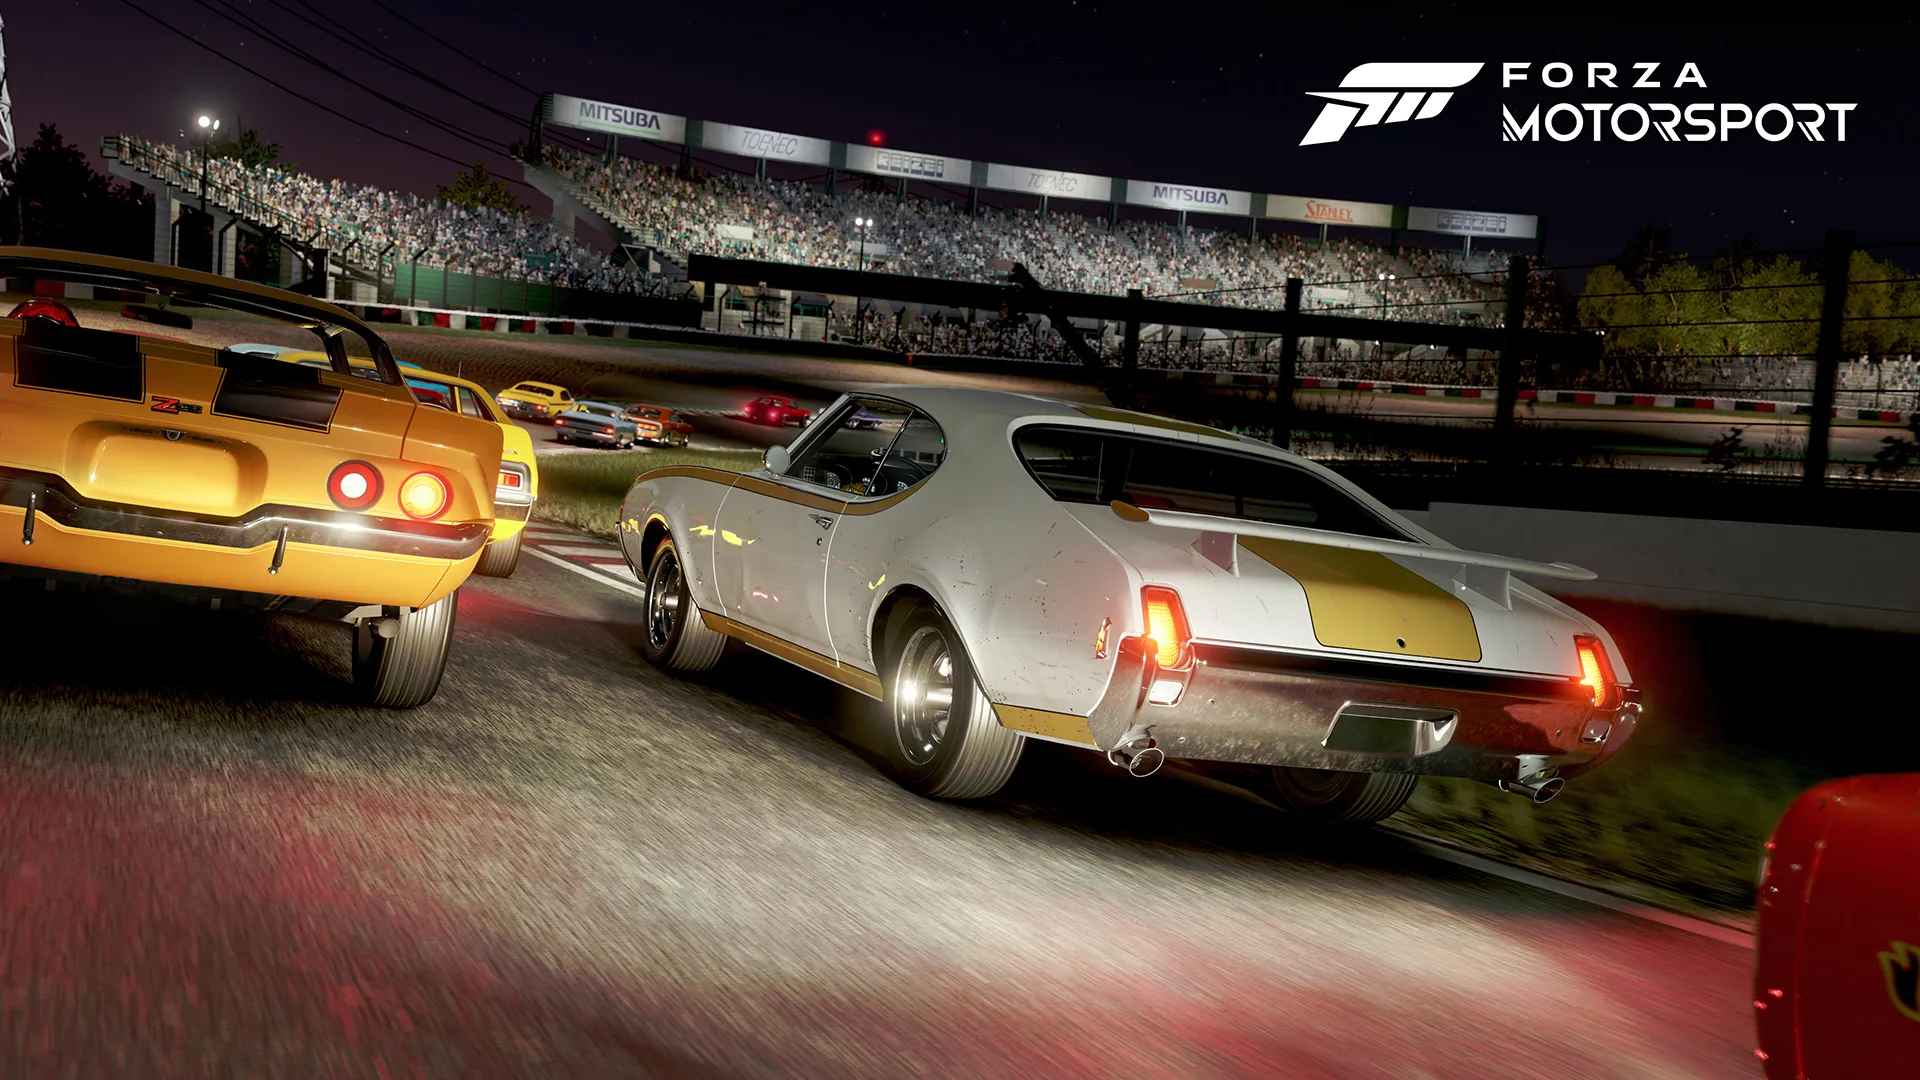 Forza Motorsport выйдет до конца июня, как сообщает Джефф Кили: с сайта NEWXBOXONE.RU